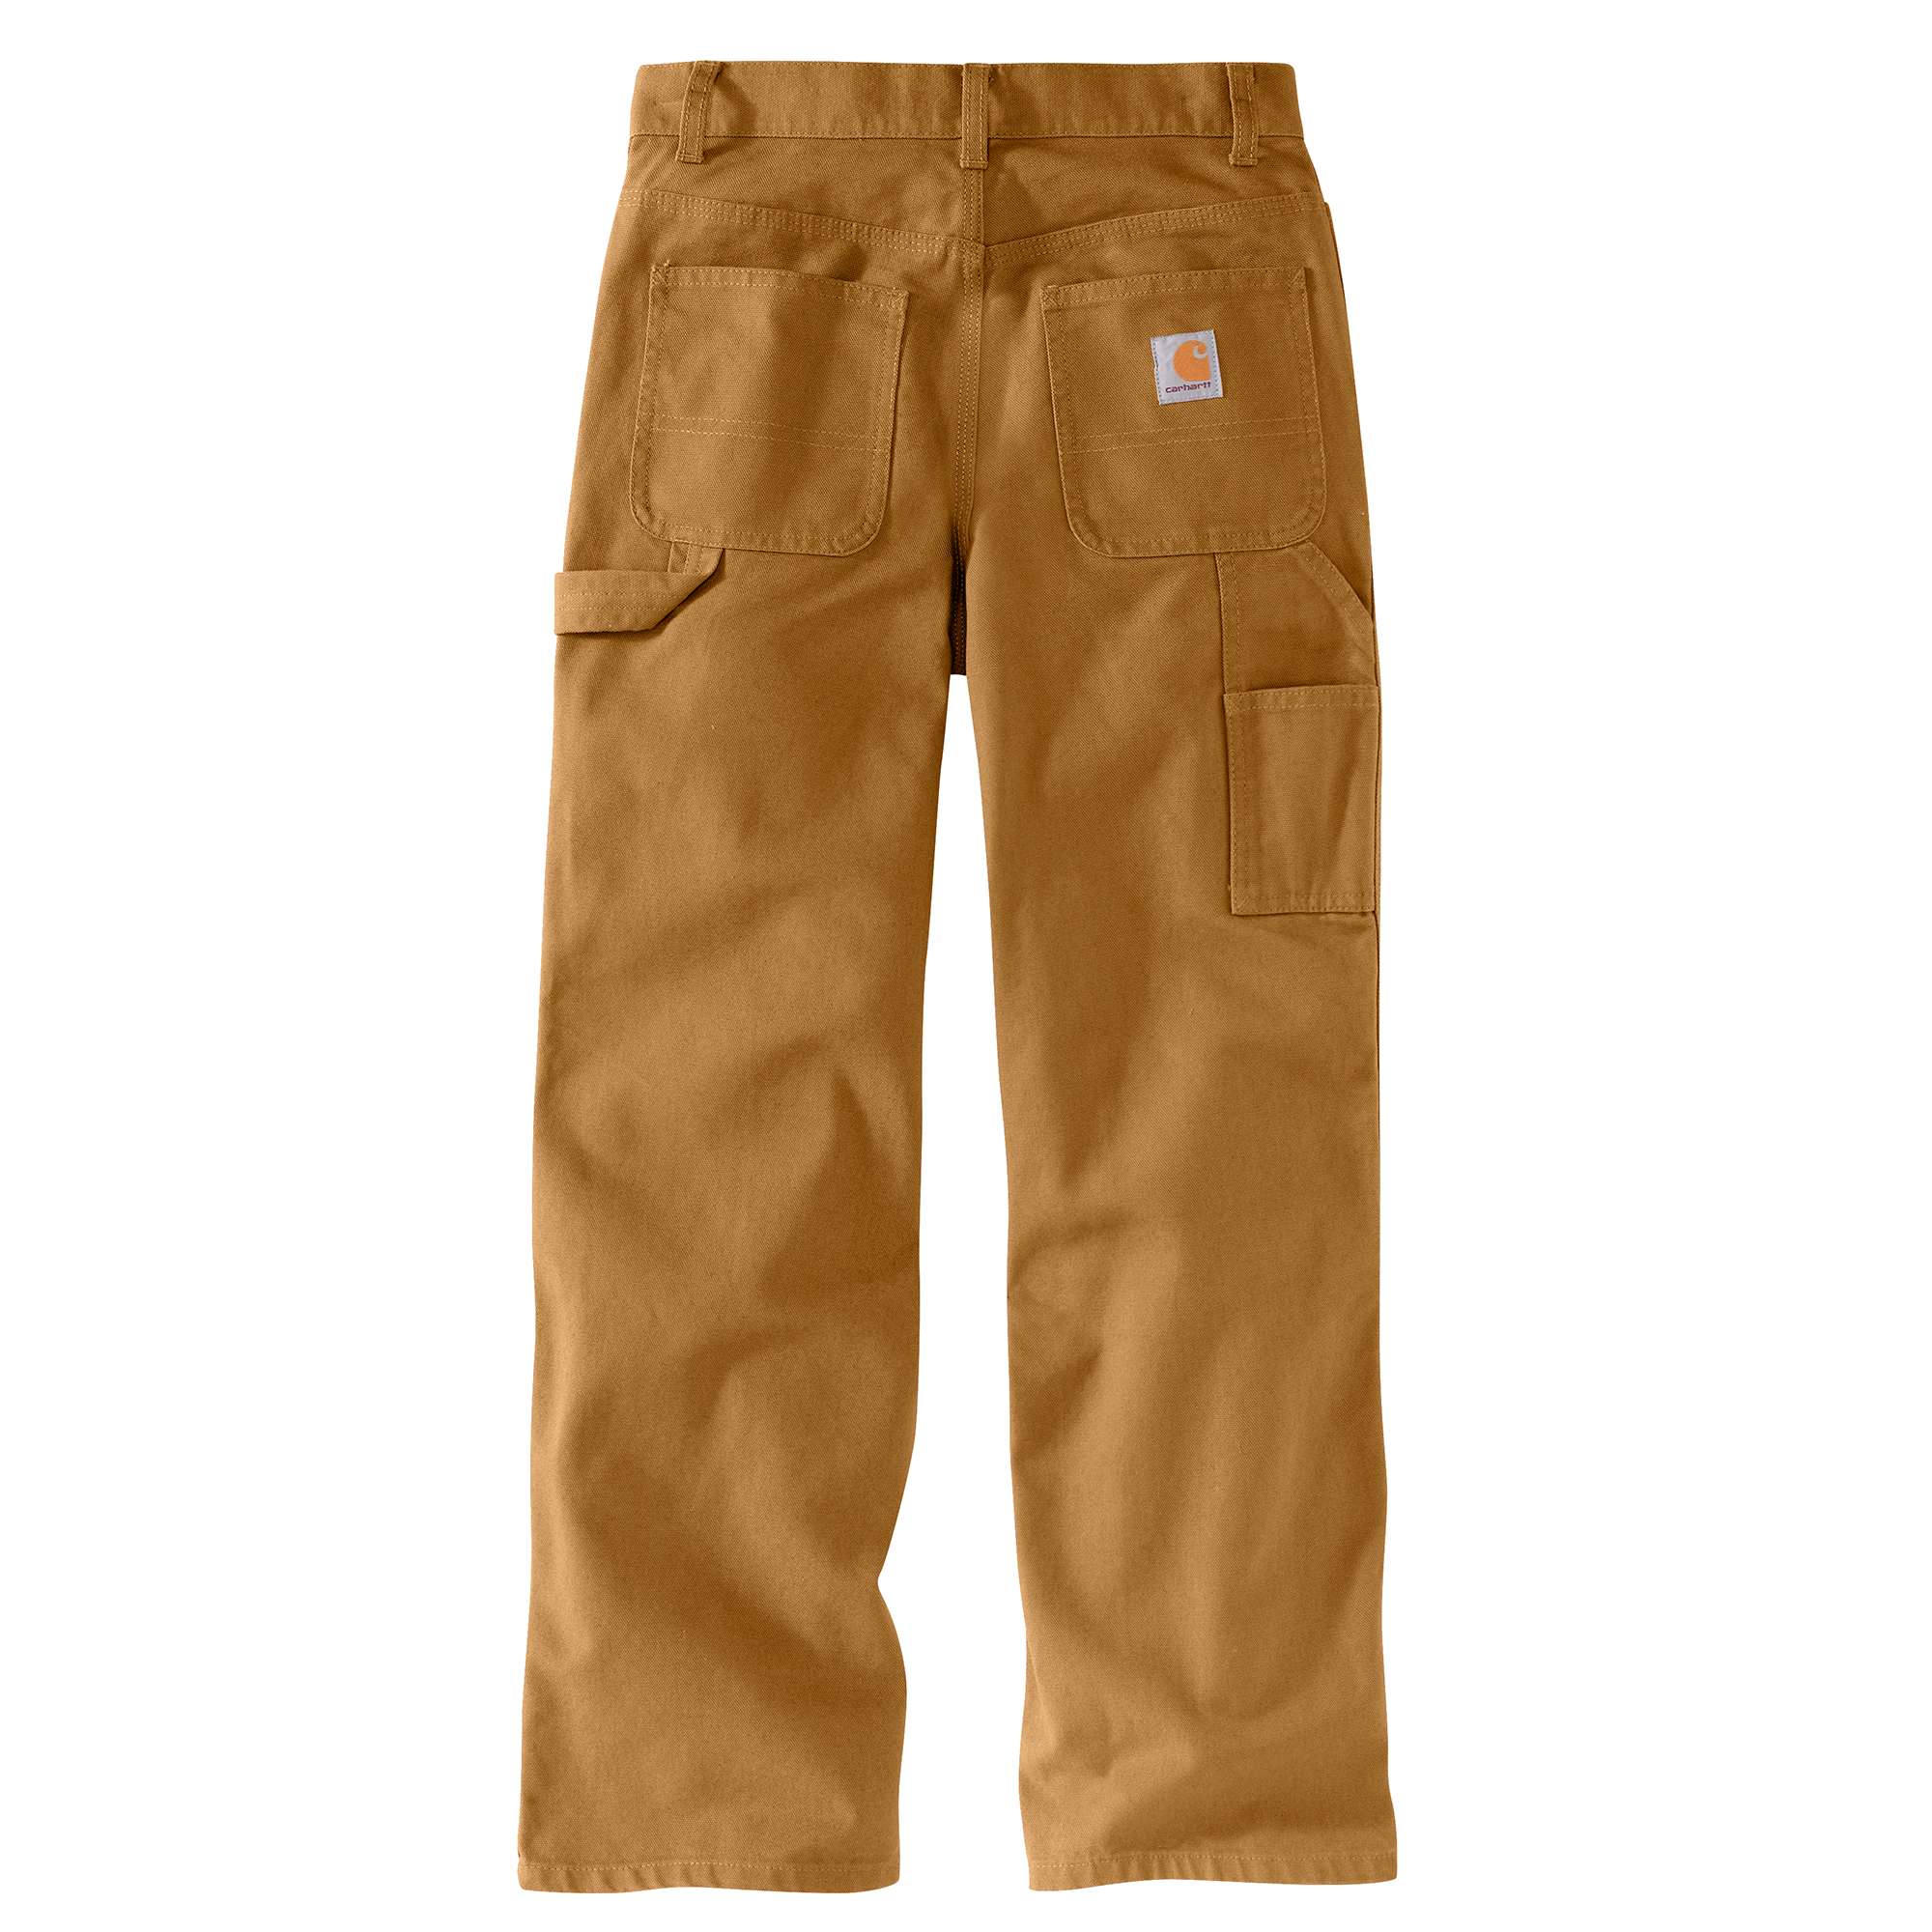 boys size 16 cargo pants